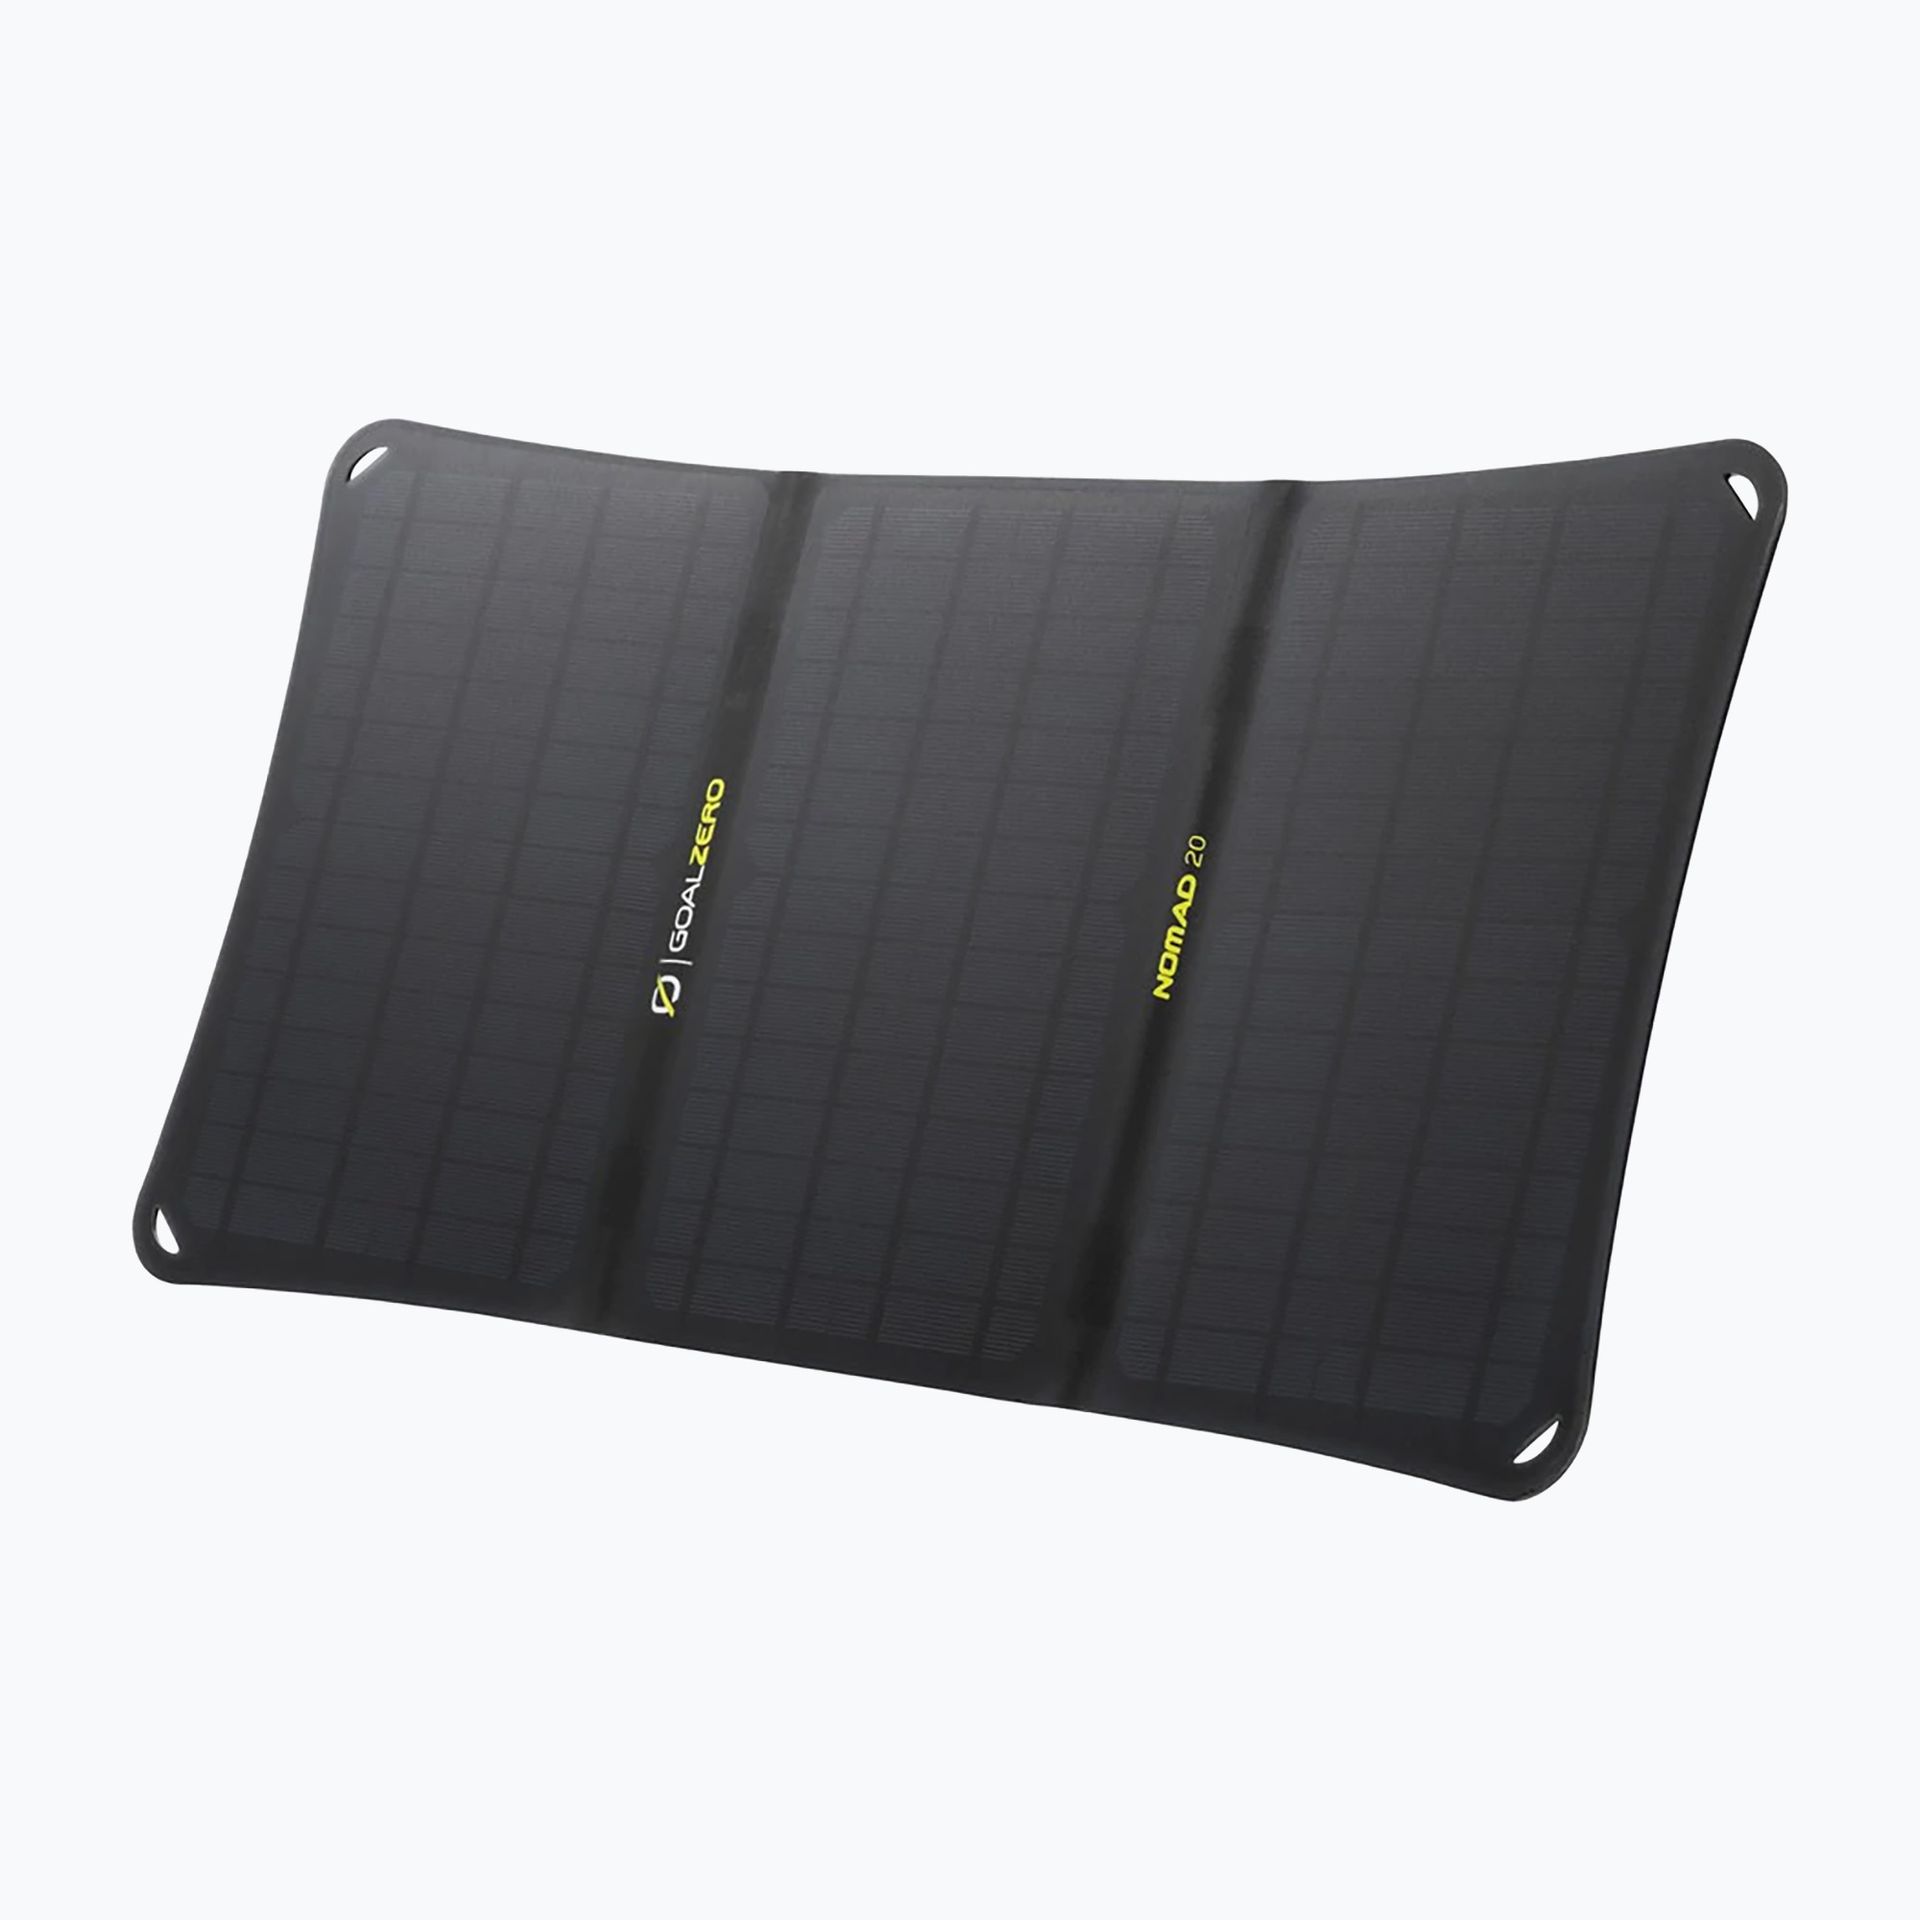 Goal Zero Nomad 20 - mobilny, elastyczny, składany i wodoodporny panel solarny. 11910